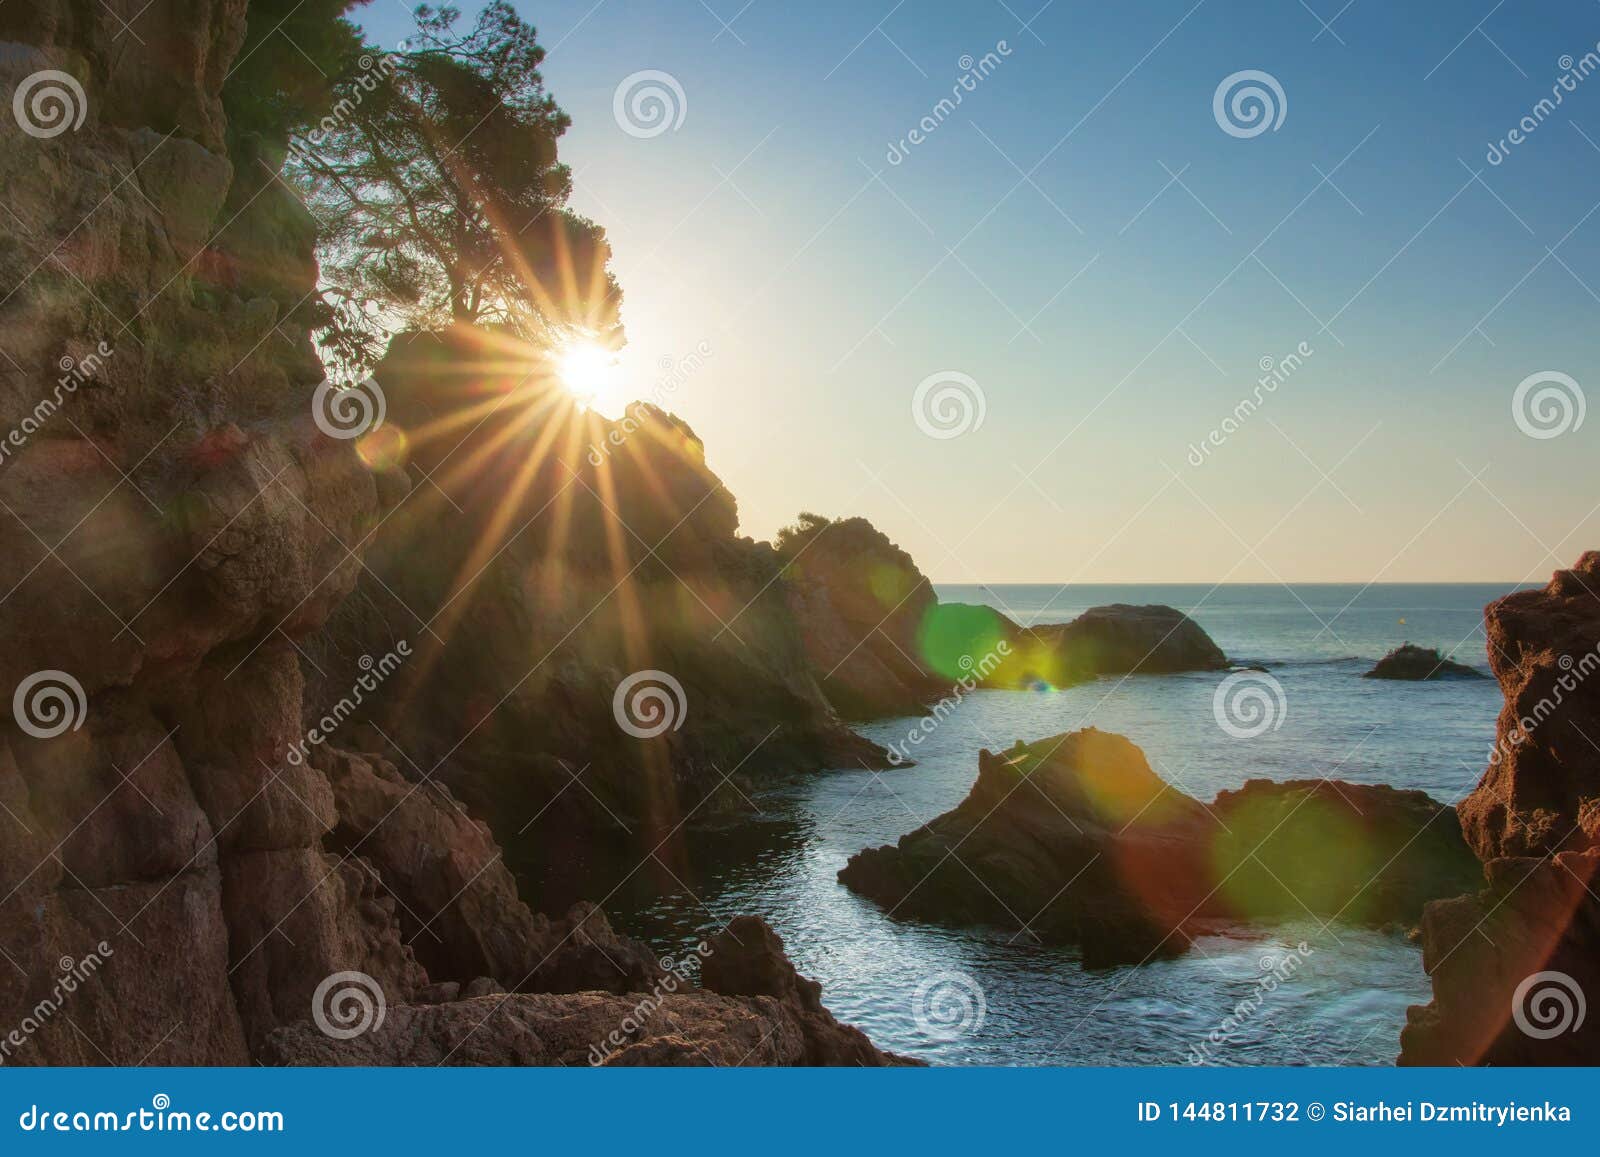 Sunrise on Sea Coast in Spain Stock Photo - Image of seascape, nature ...